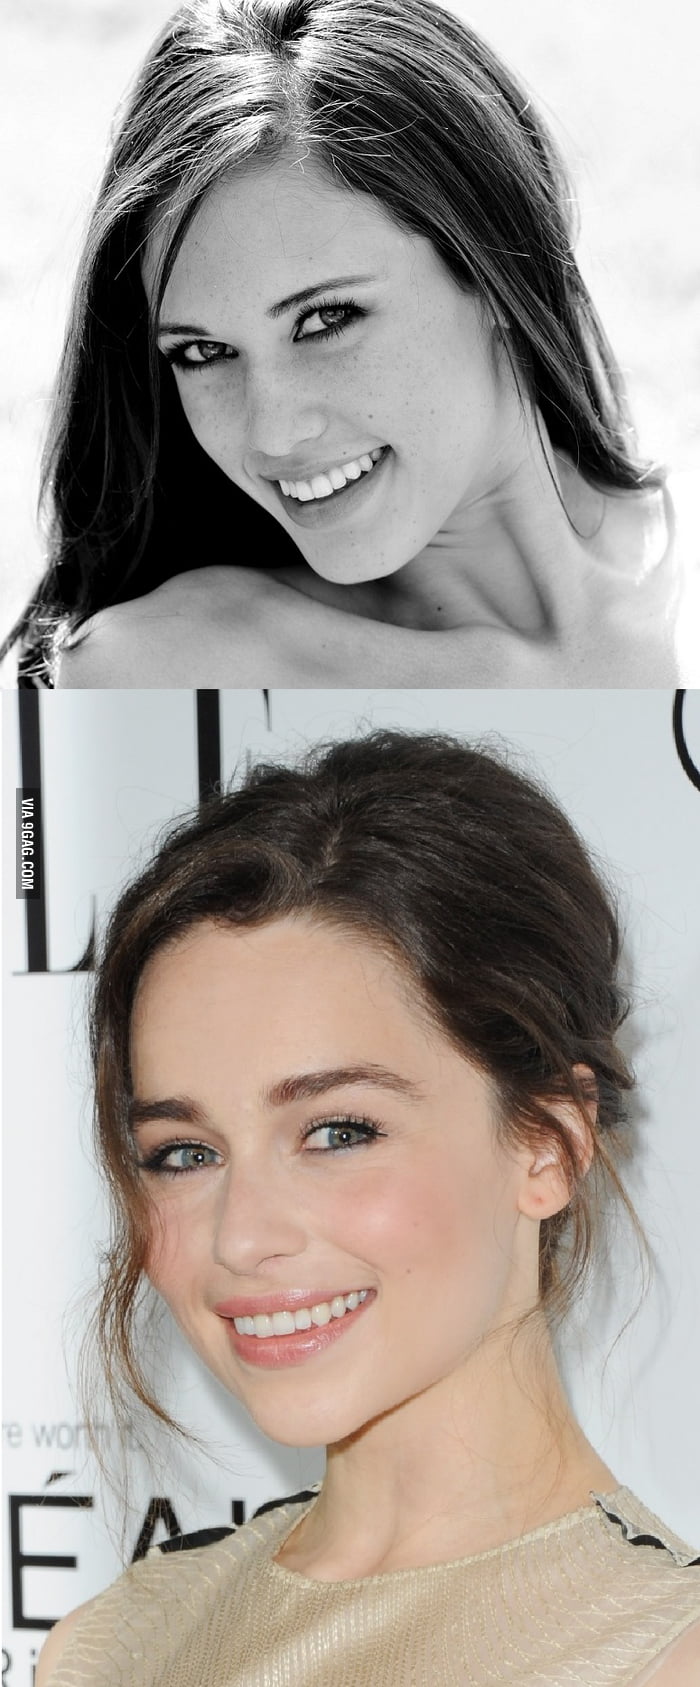 Emilia Clarke (GoT) lookalike Tiffany Thompson. You're welcome! - 9GAG